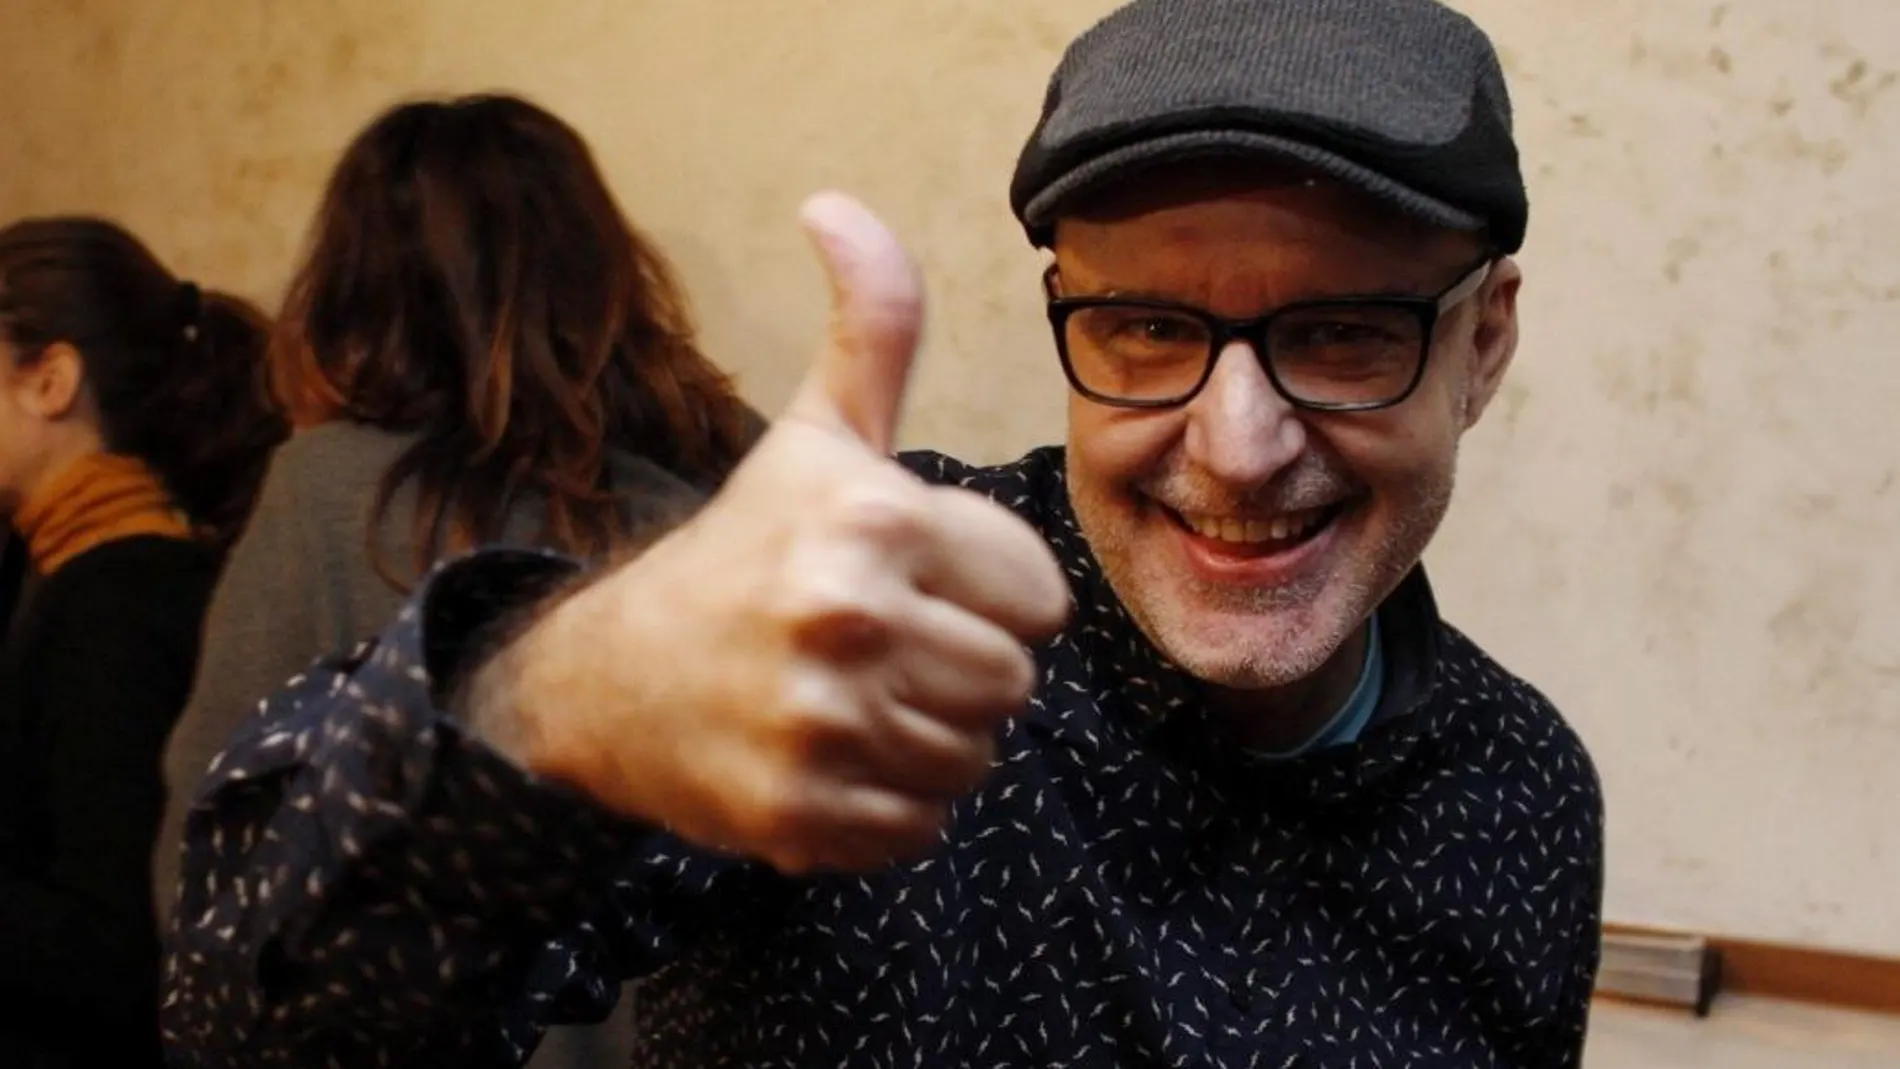 El barcelonés Juanjo Giménez celebra haber sido nominado en la categoría de mejor cortometraje dentro de la 89 edición de los Óscar.